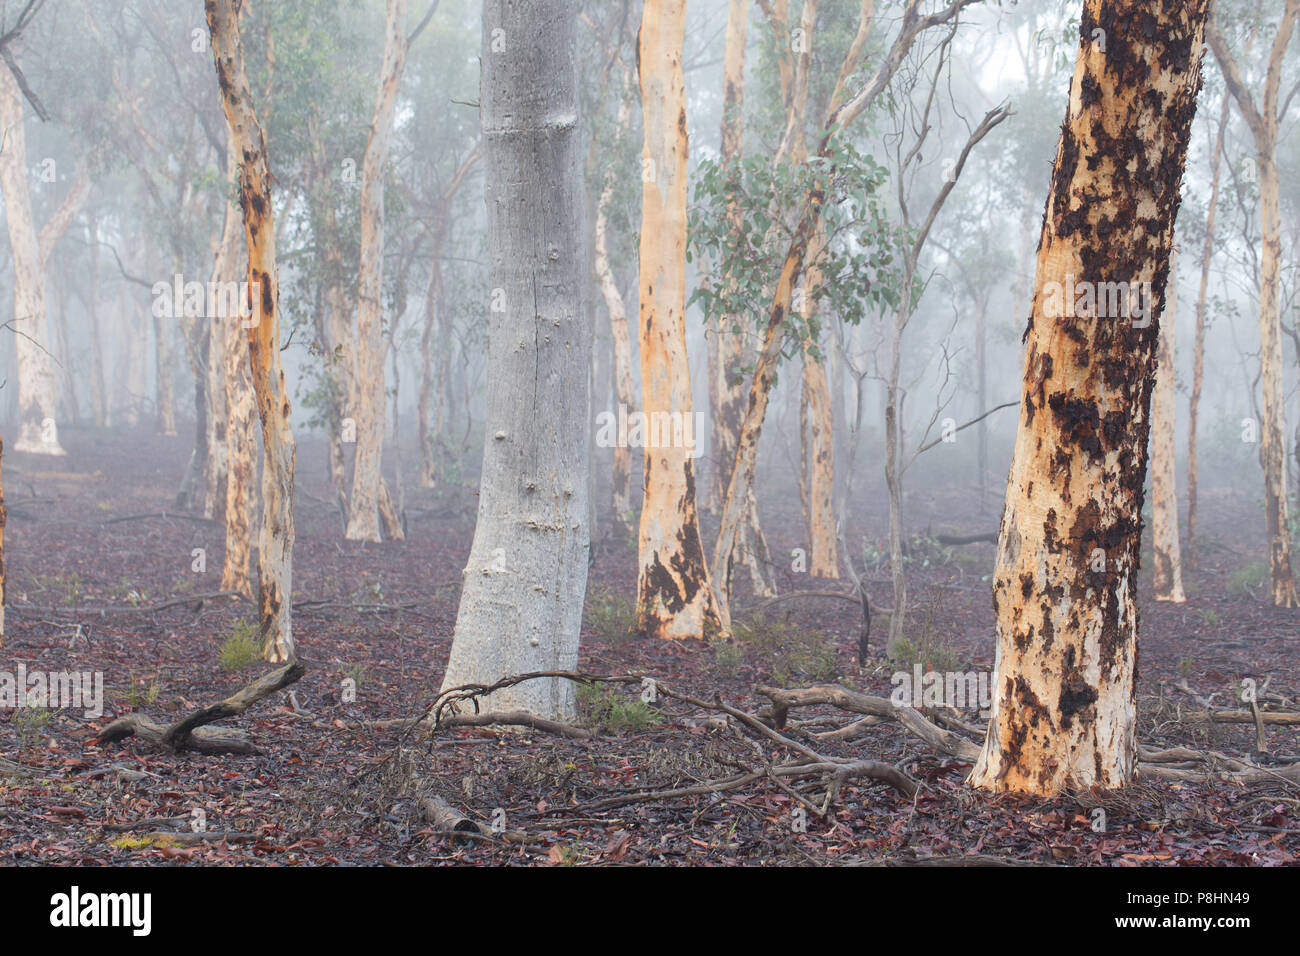 Eucalyptus wandoo woodland (wandoo) dans la forêt d'état de Dryandra, Australie occidentale Banque D'Images